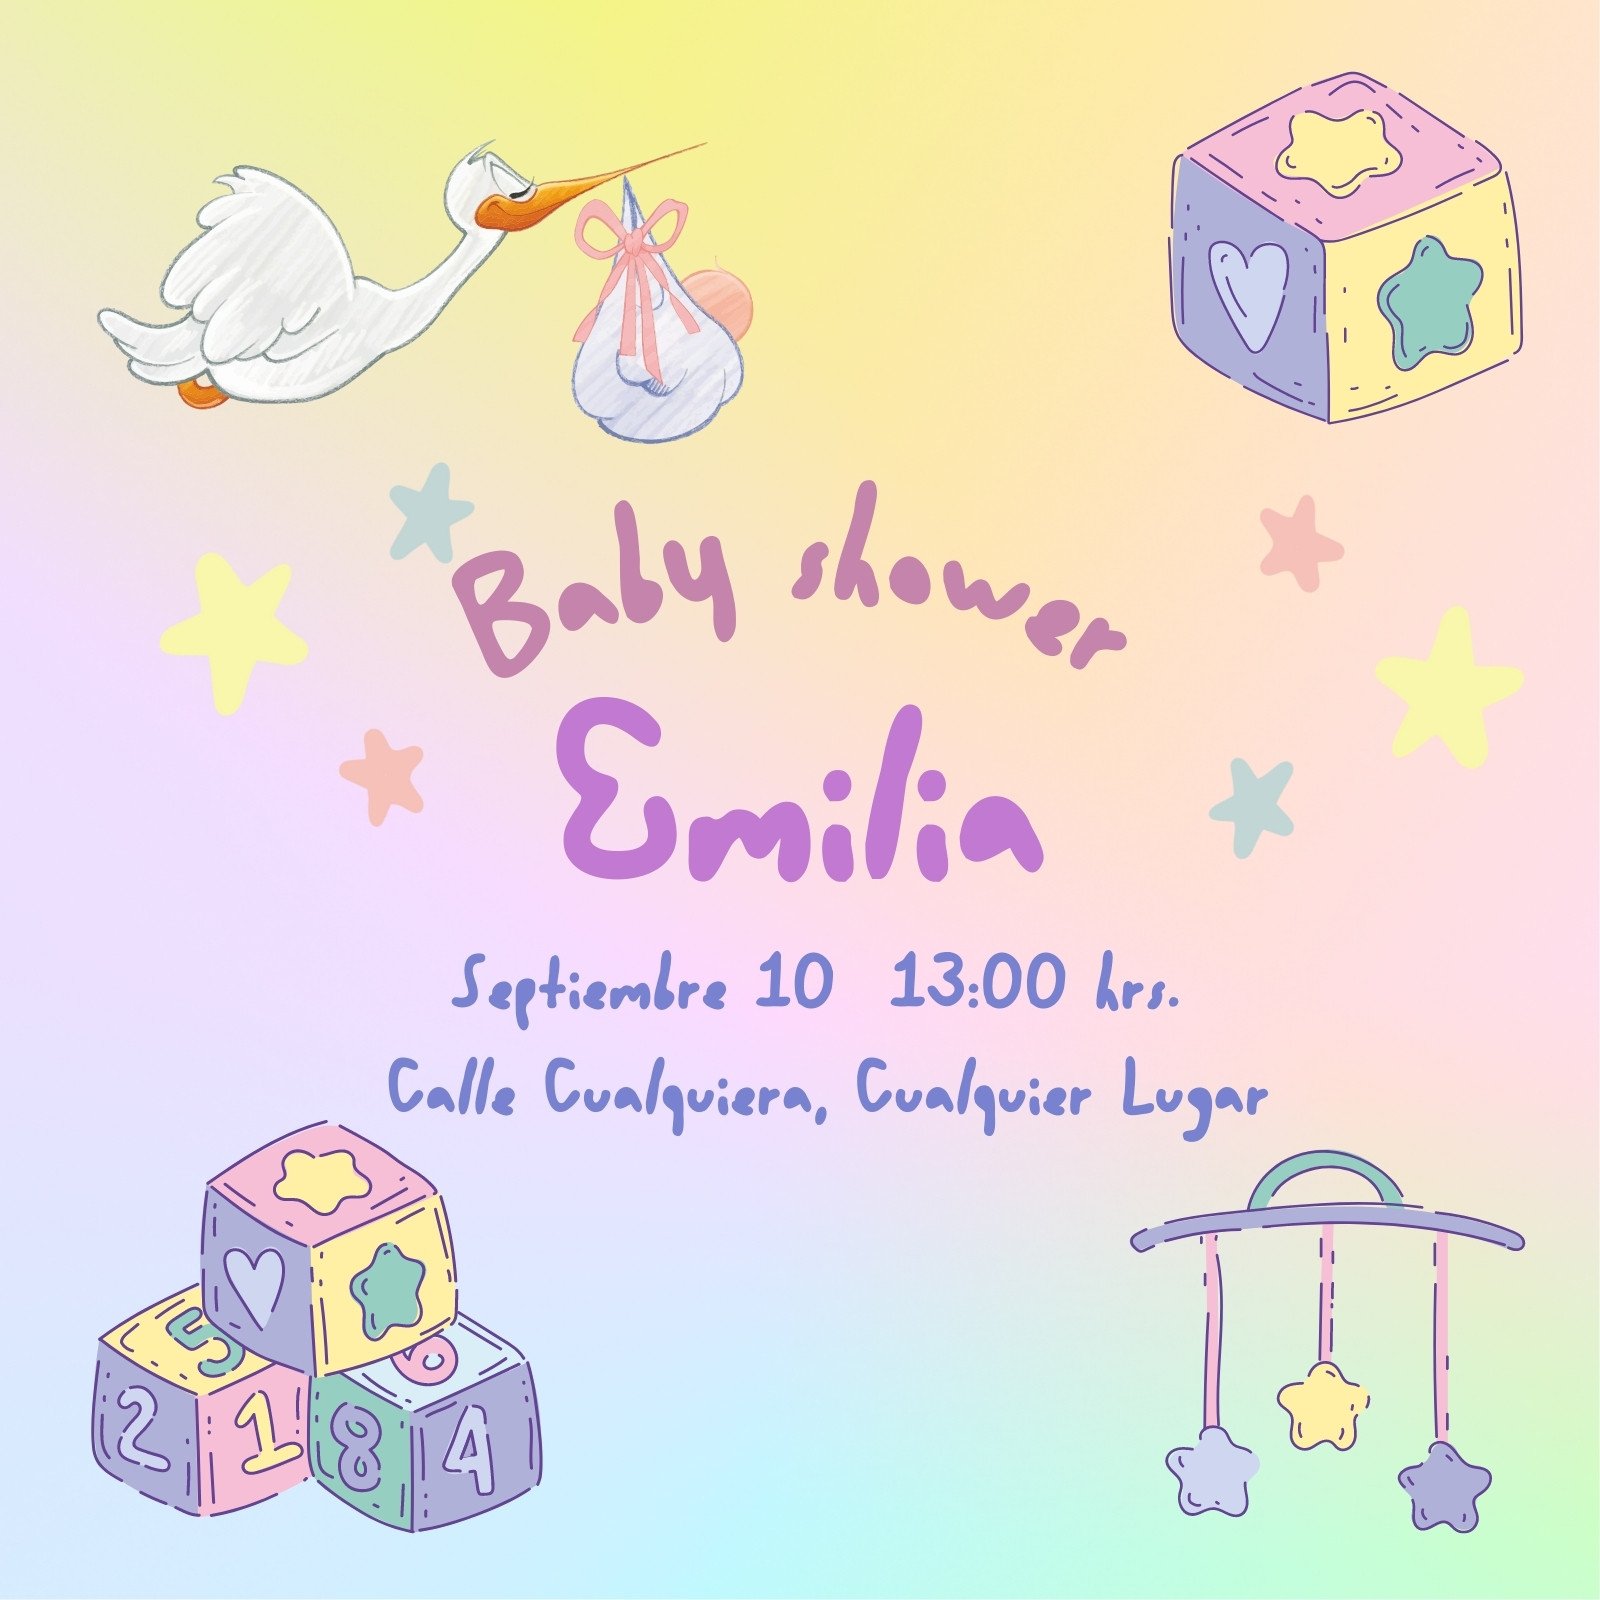 Plantillas de invitaciones para baby shower gratis para editar | Canva